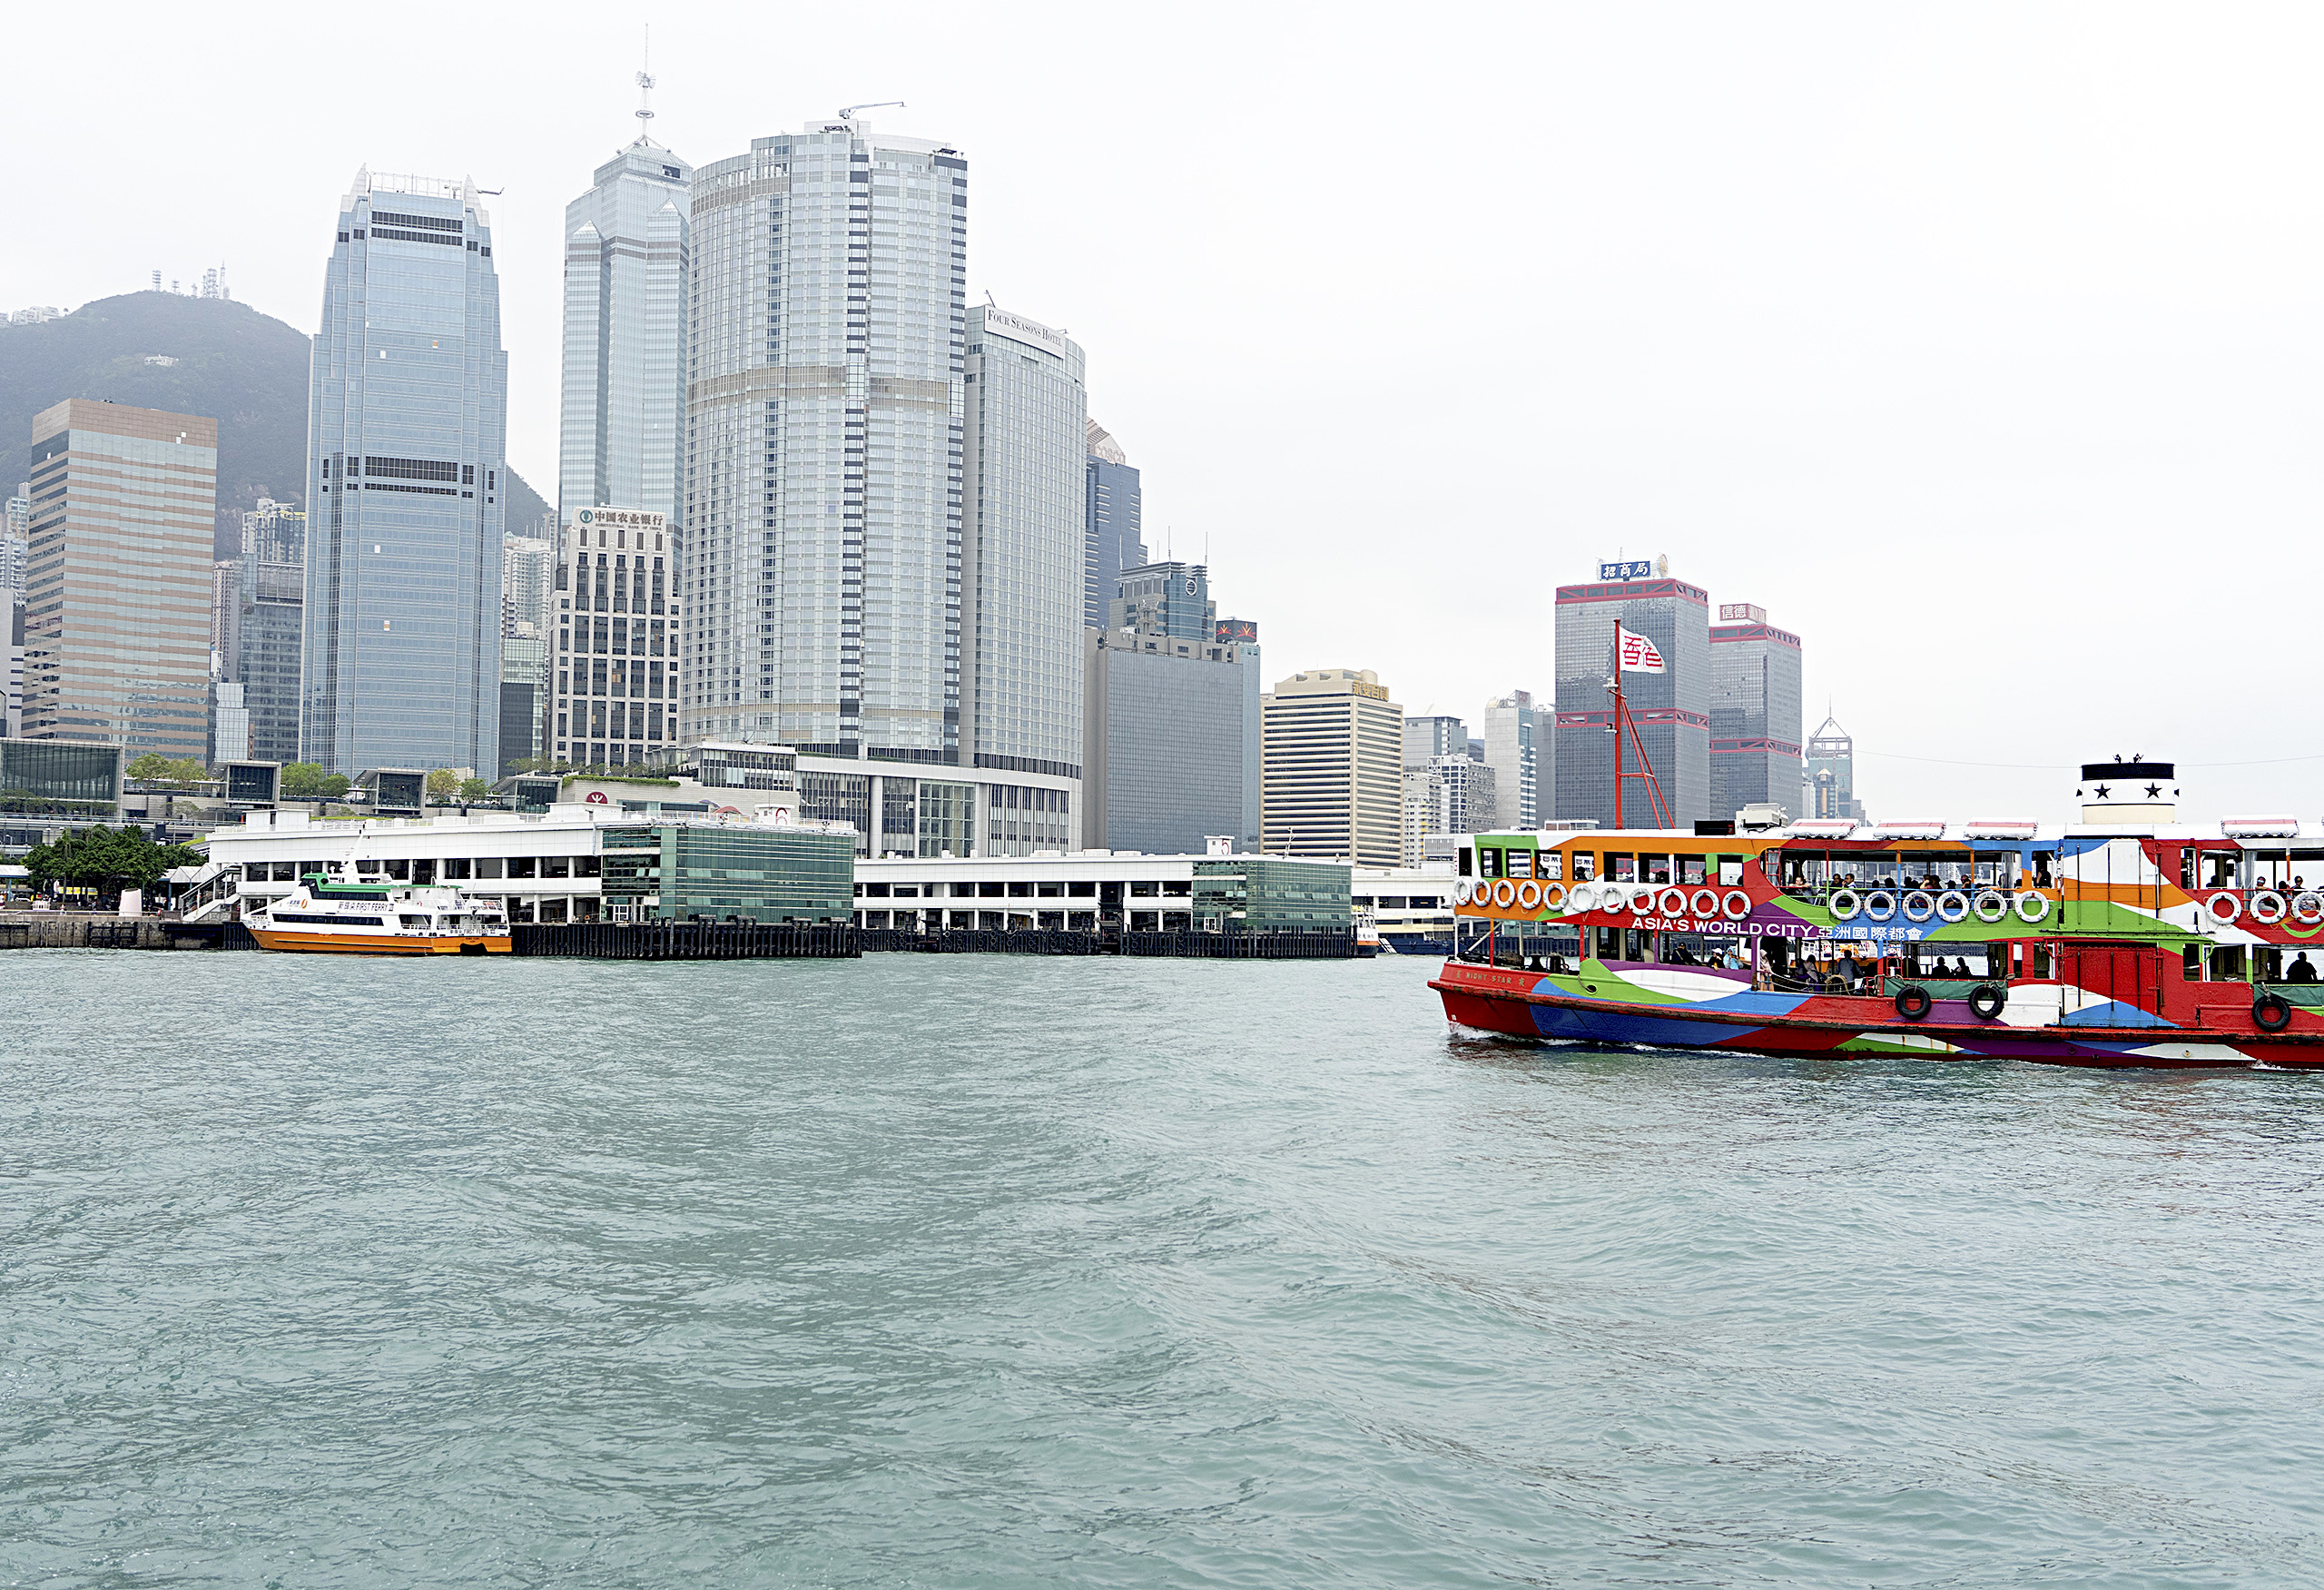 HK, Skyline, boat